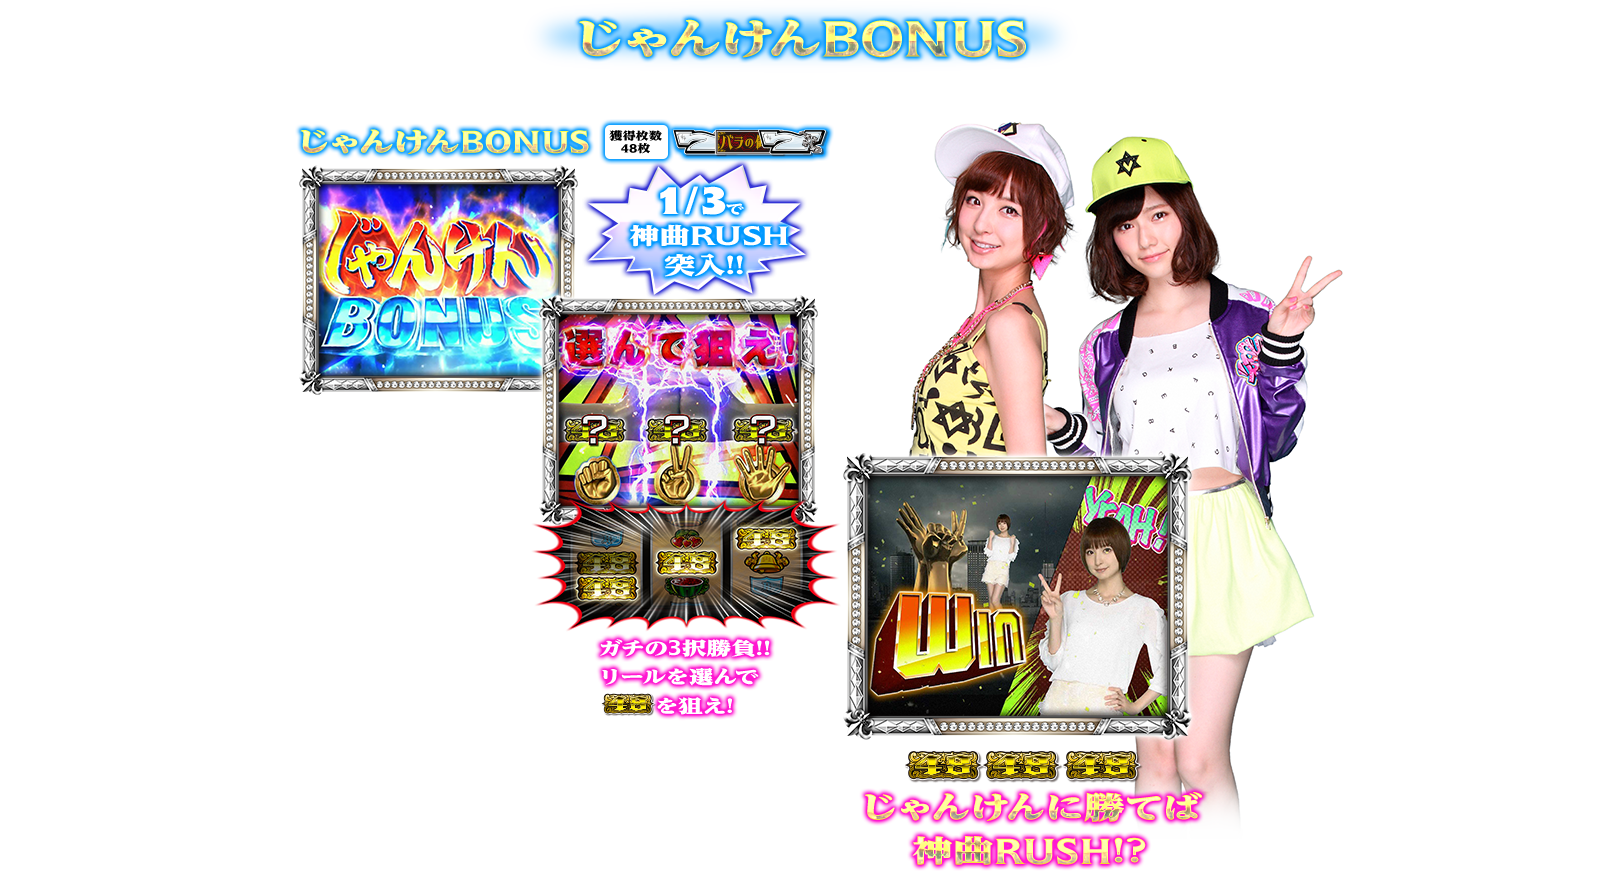 ぱちスロAKB48 バラの儀式の演出紹介。通常時のBONUSのじゃんけんBONUSです。AKB48ファン、スロット初心者、ヘビーユーザーまで誰もが楽しめるDDスペックで登場!!